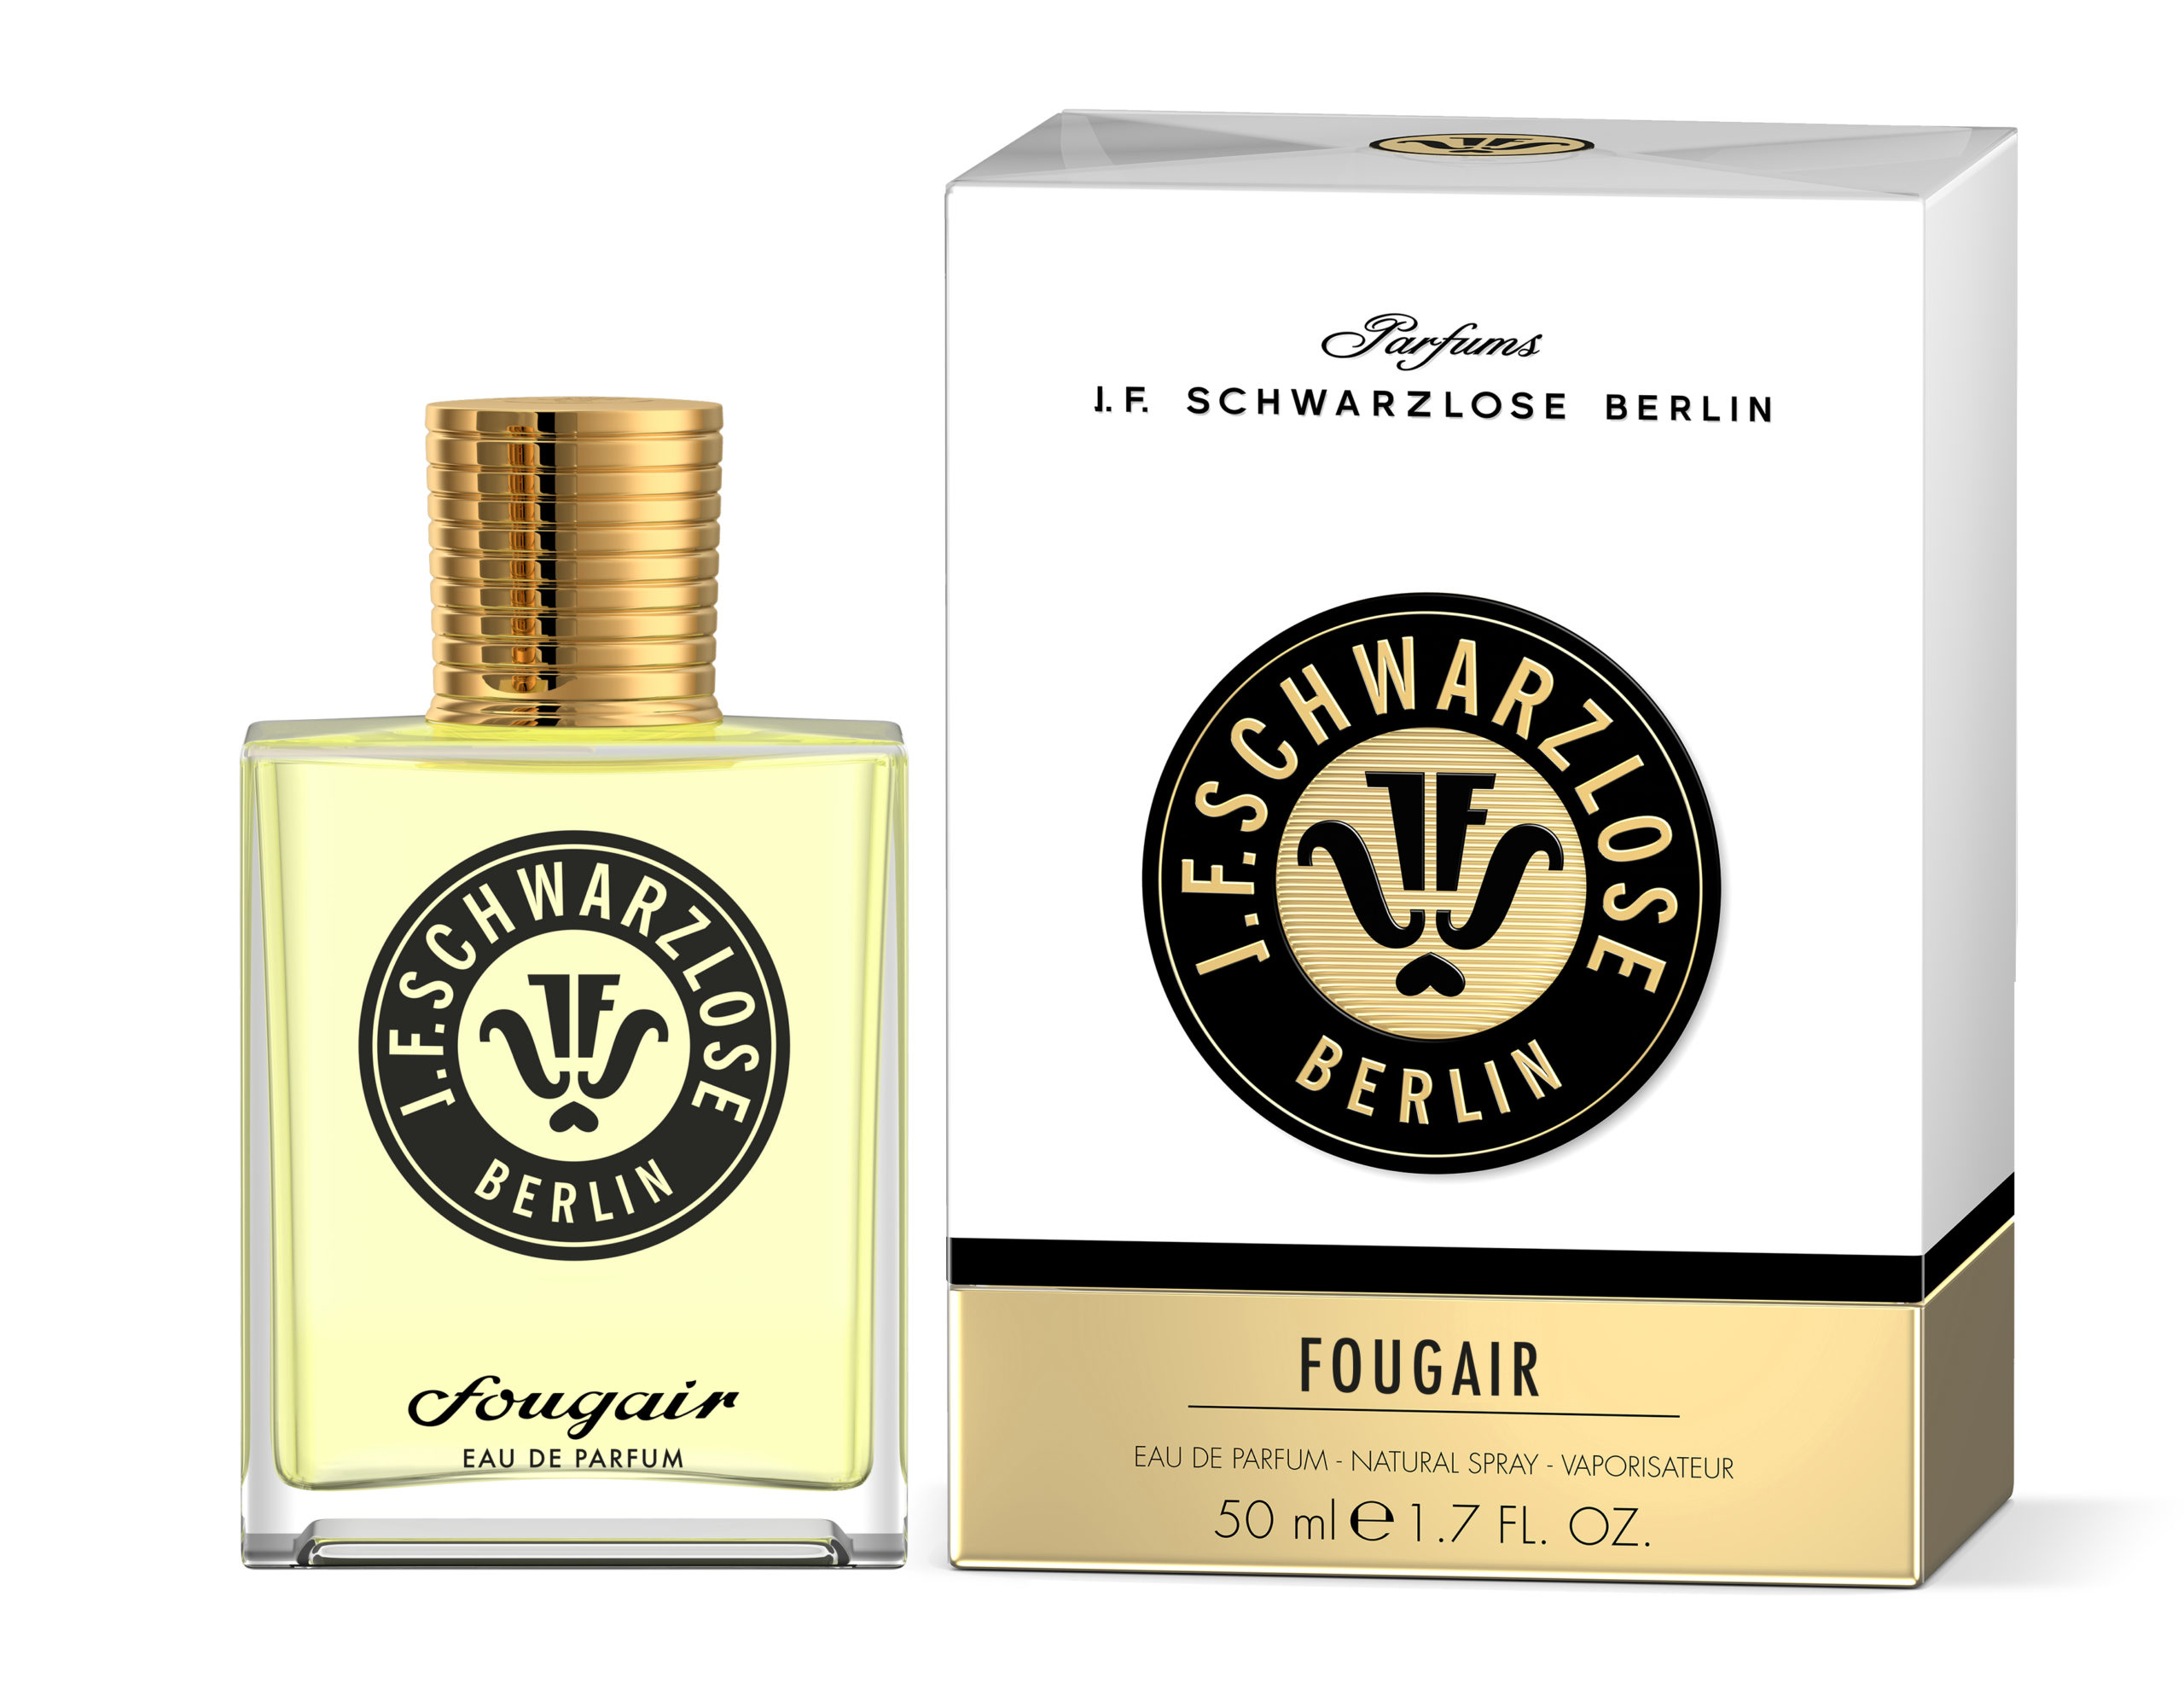 Fougair Eau de Parfum | For urban free spritis from J. F.